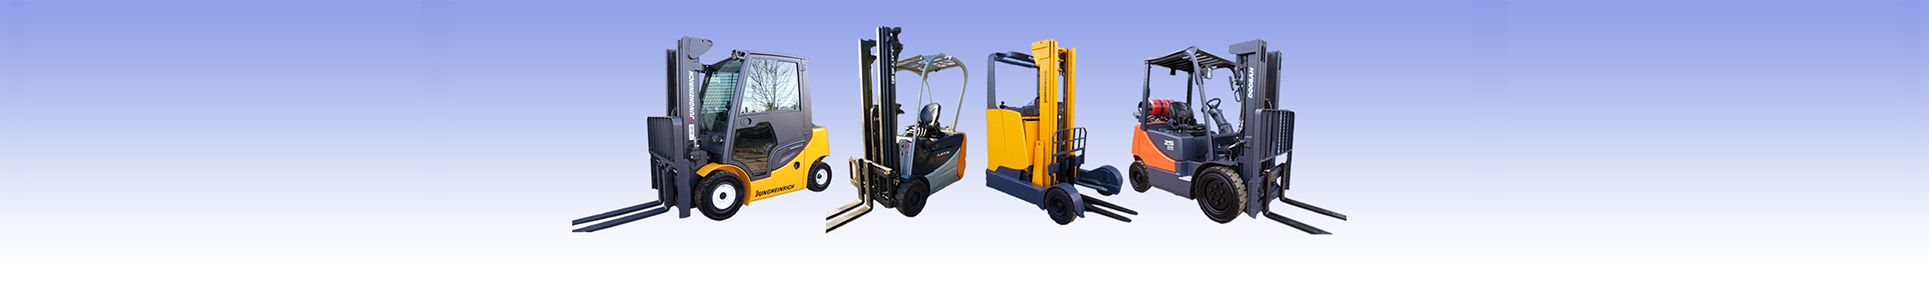 Forklift Services For Diesel Electric Gas Forklifts Pallet Trucks